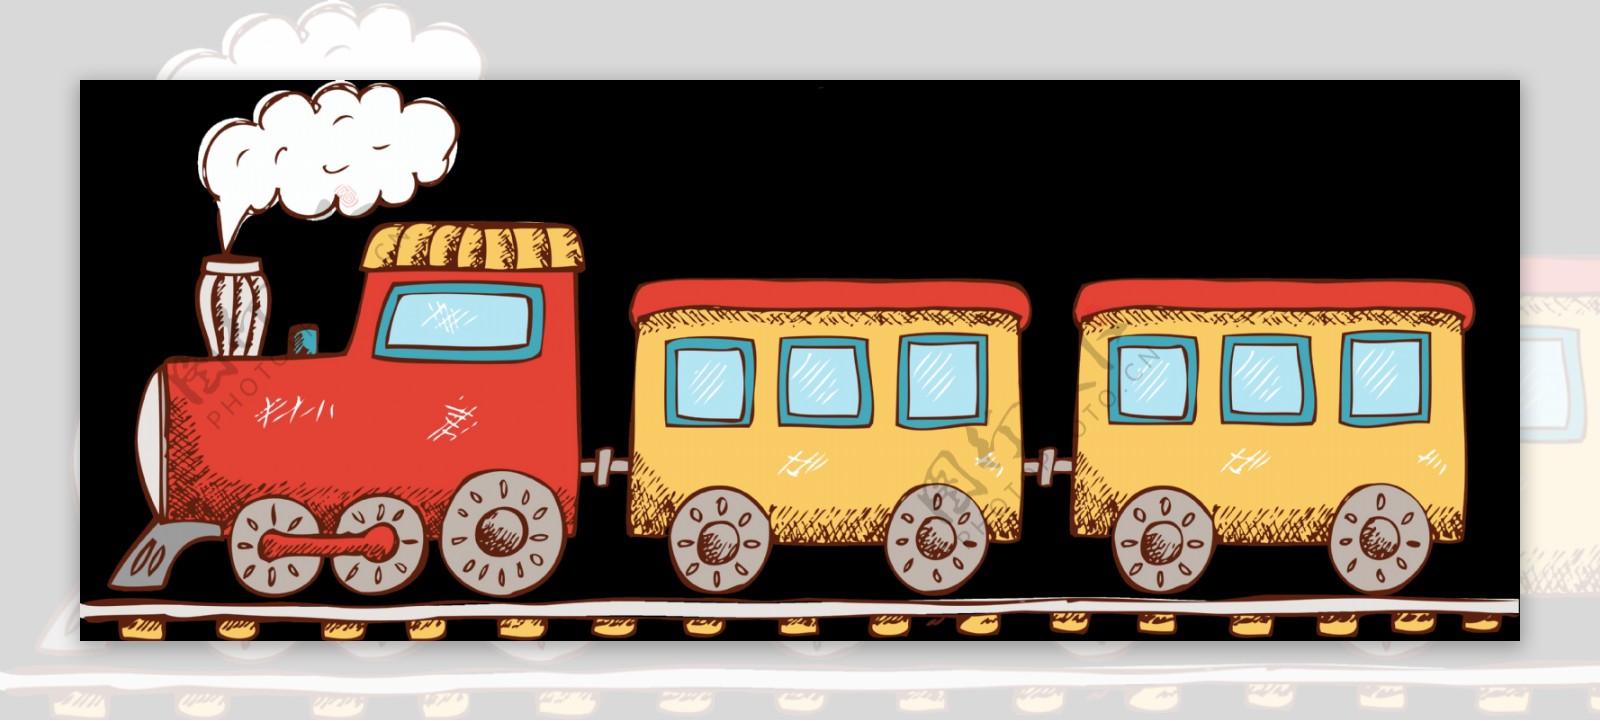 高清卡通手绘小火车玩具